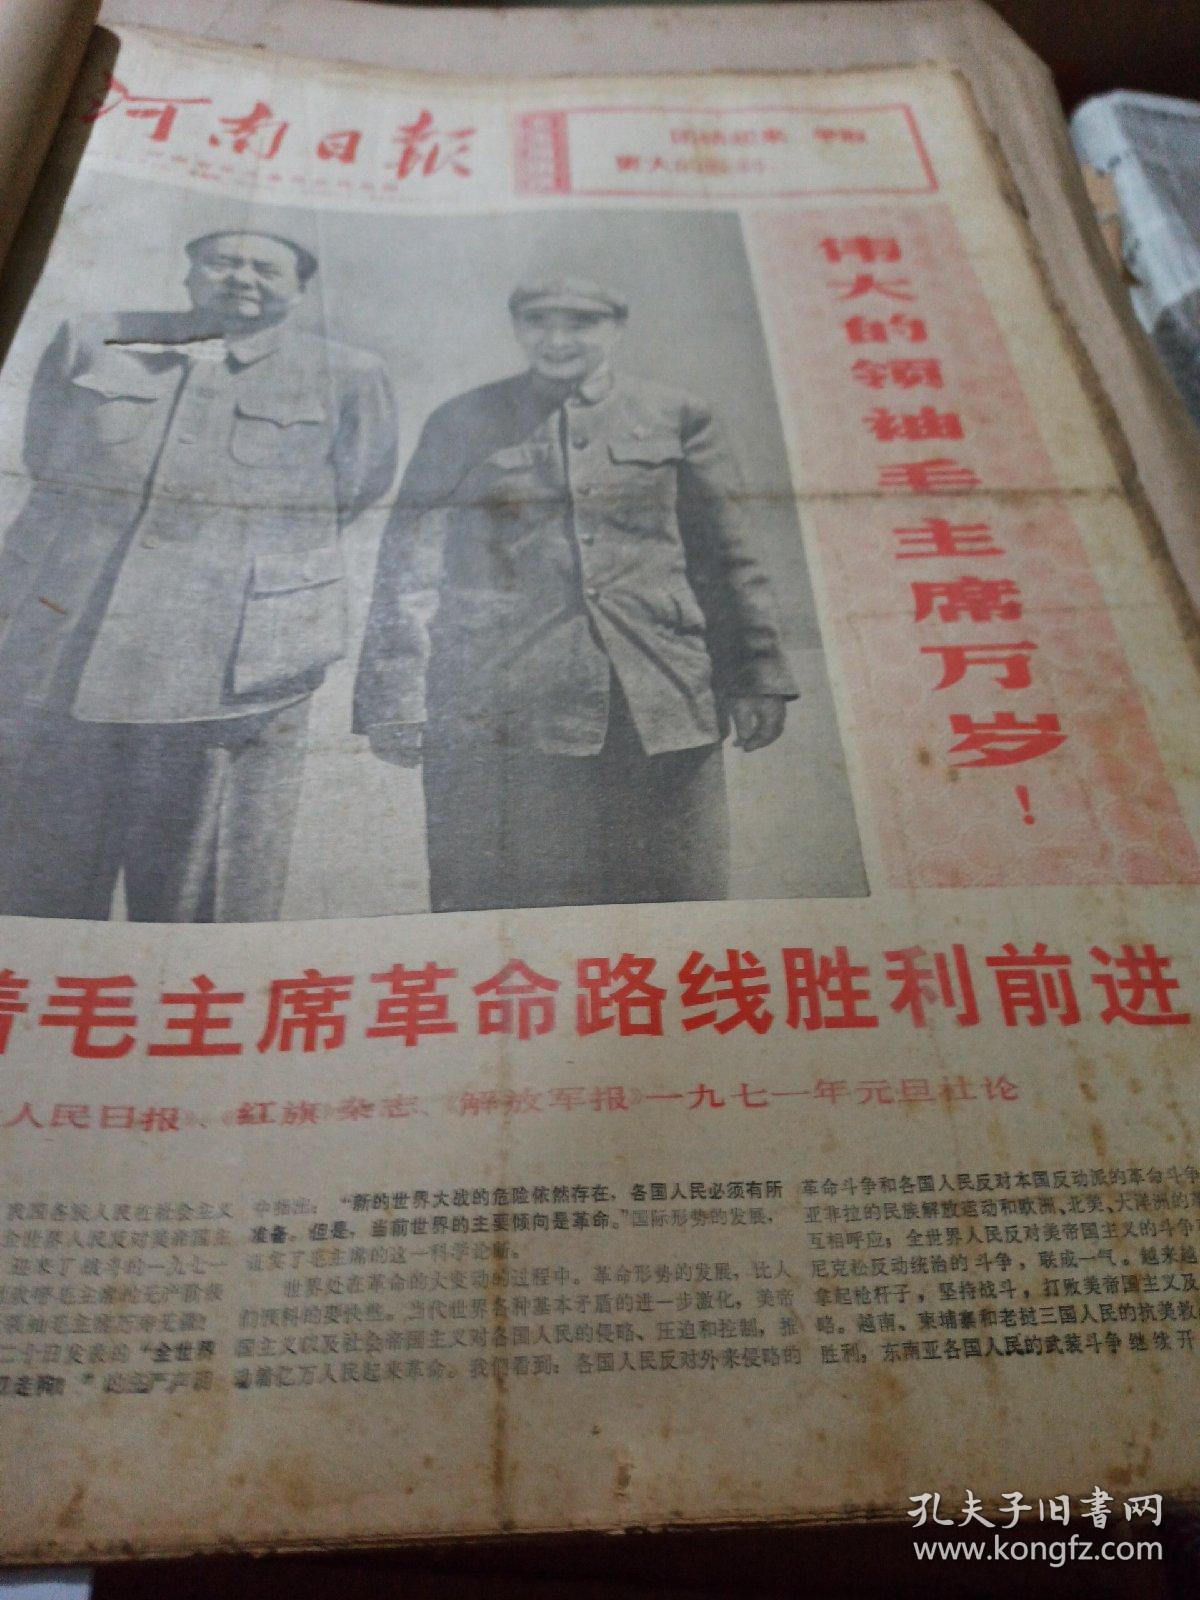 河南日报1971年1月